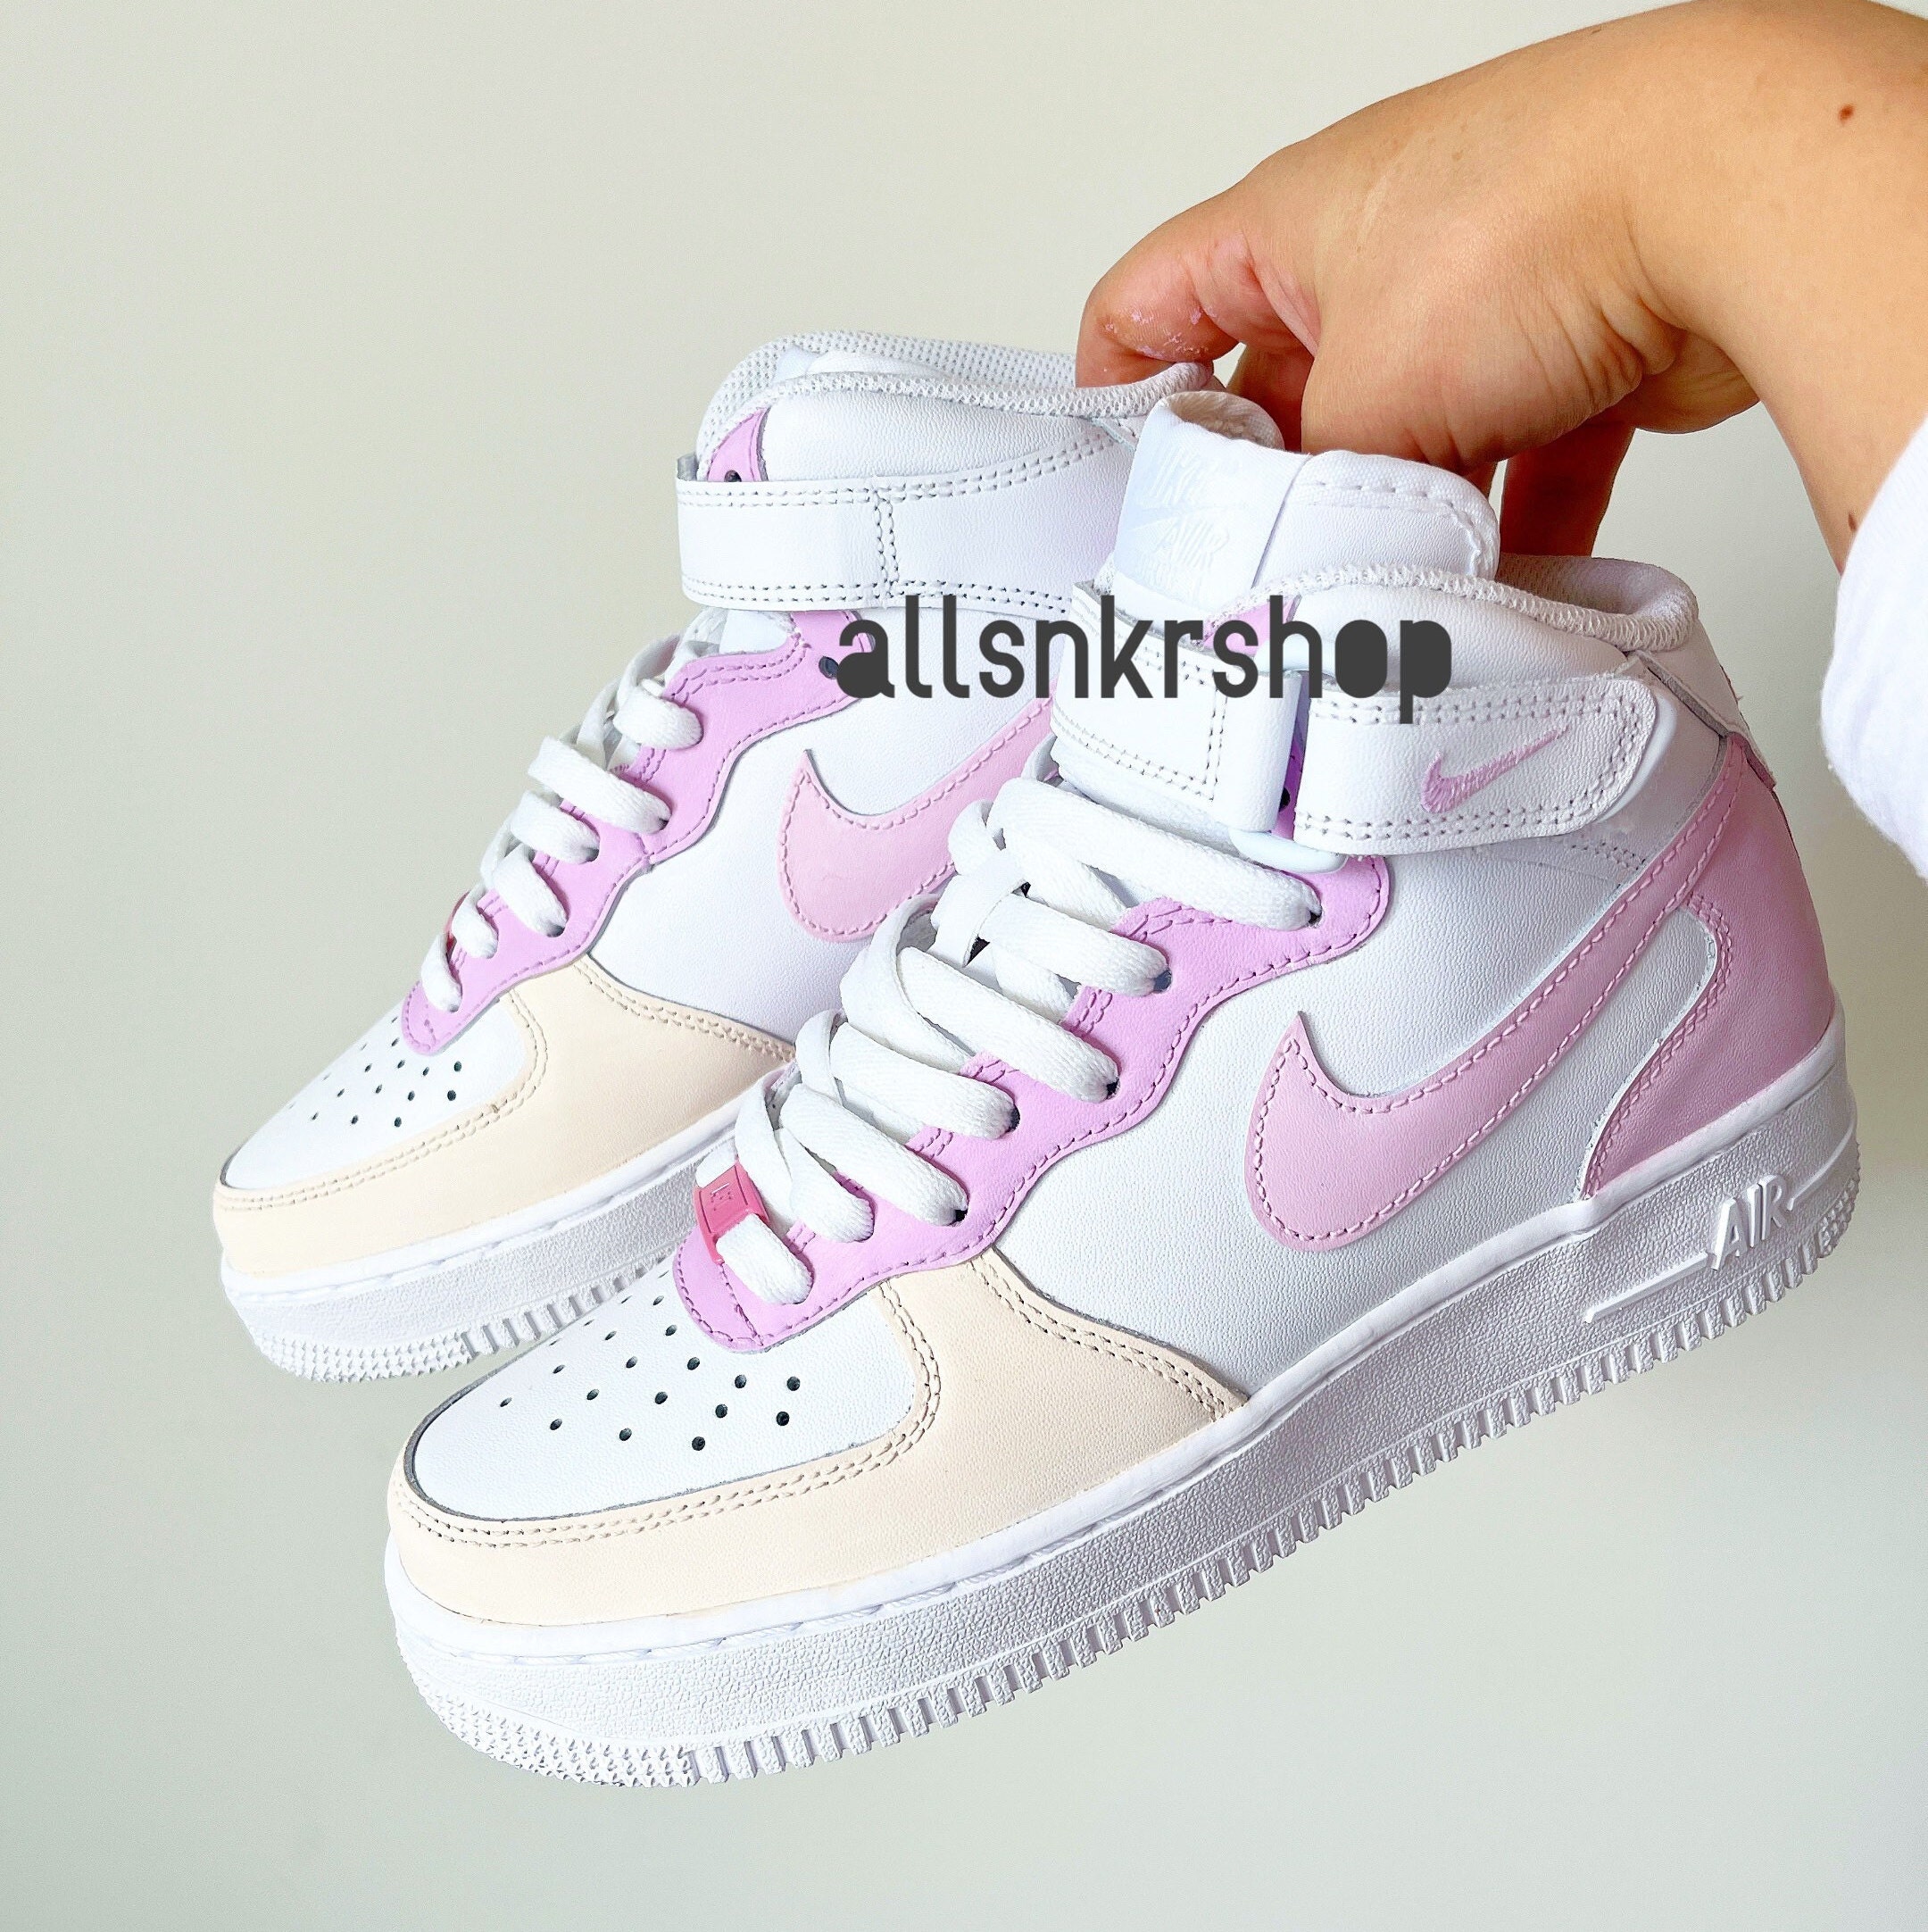 Buy Pink Custom Air 1 Sneakers Nike Custom Shoes Pink Cream Online in - Etsy